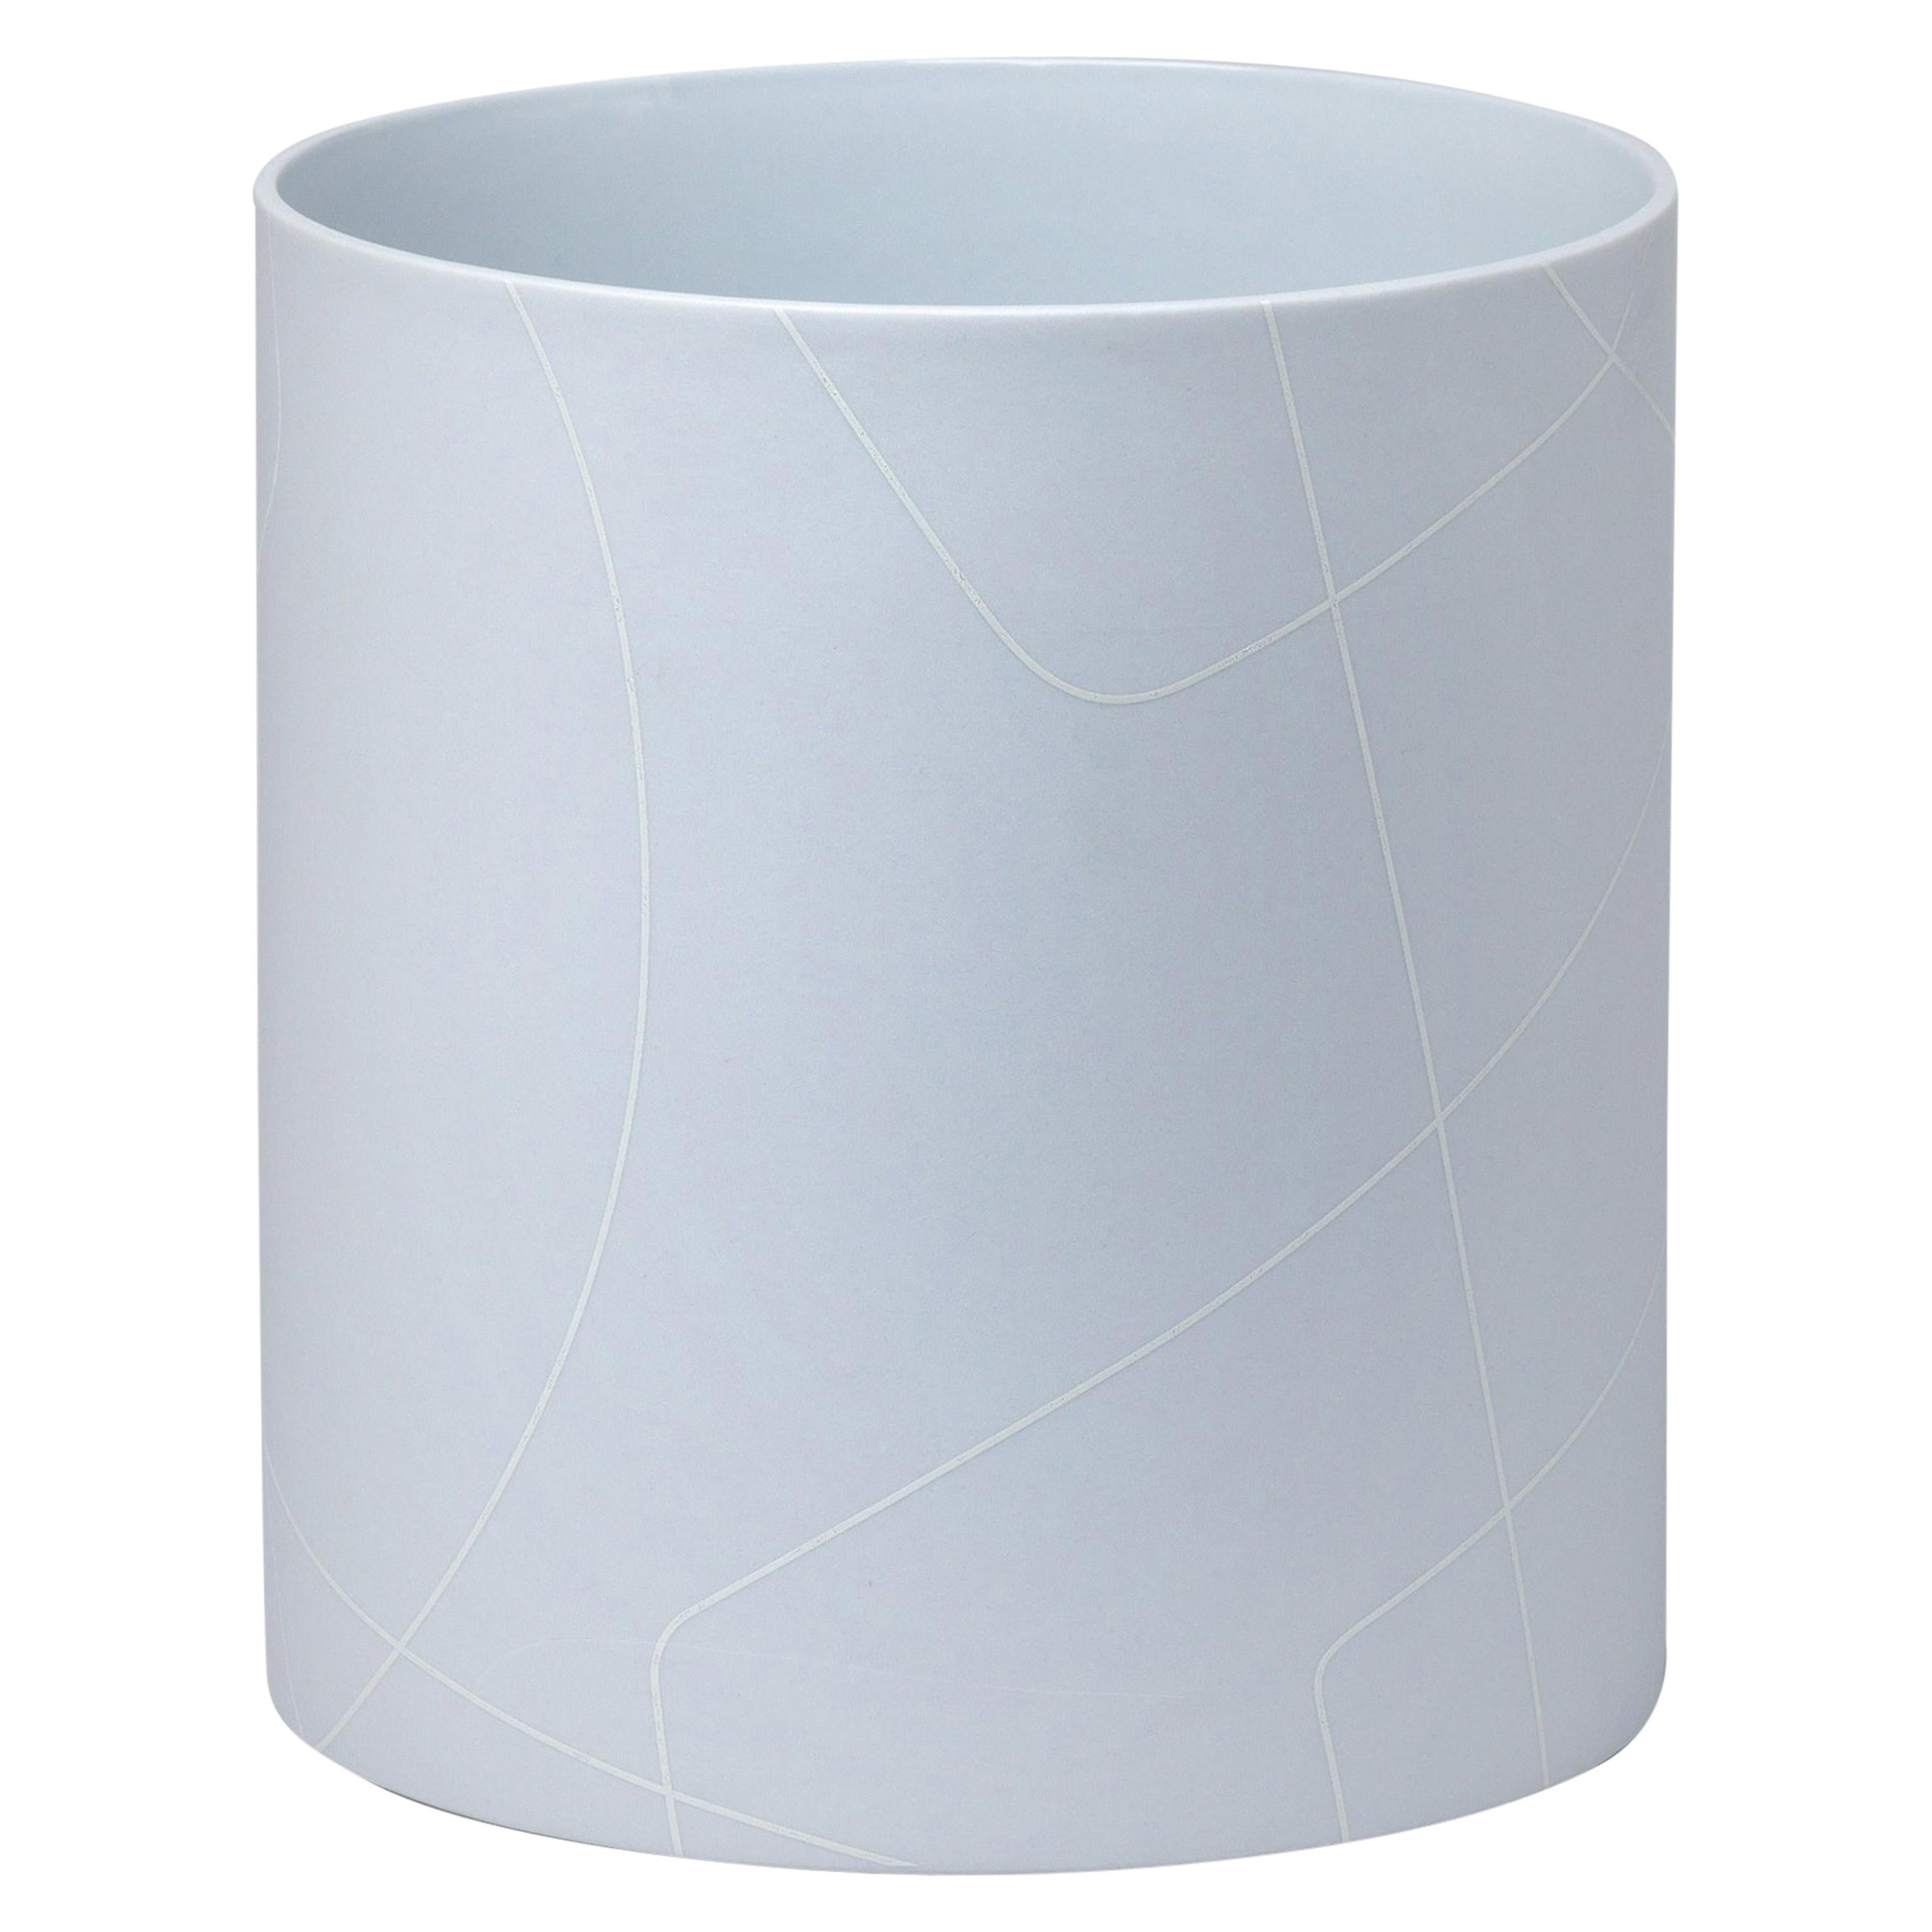 Grand vase cylindrique gris clair en céramique avec motif de lignes graphiques